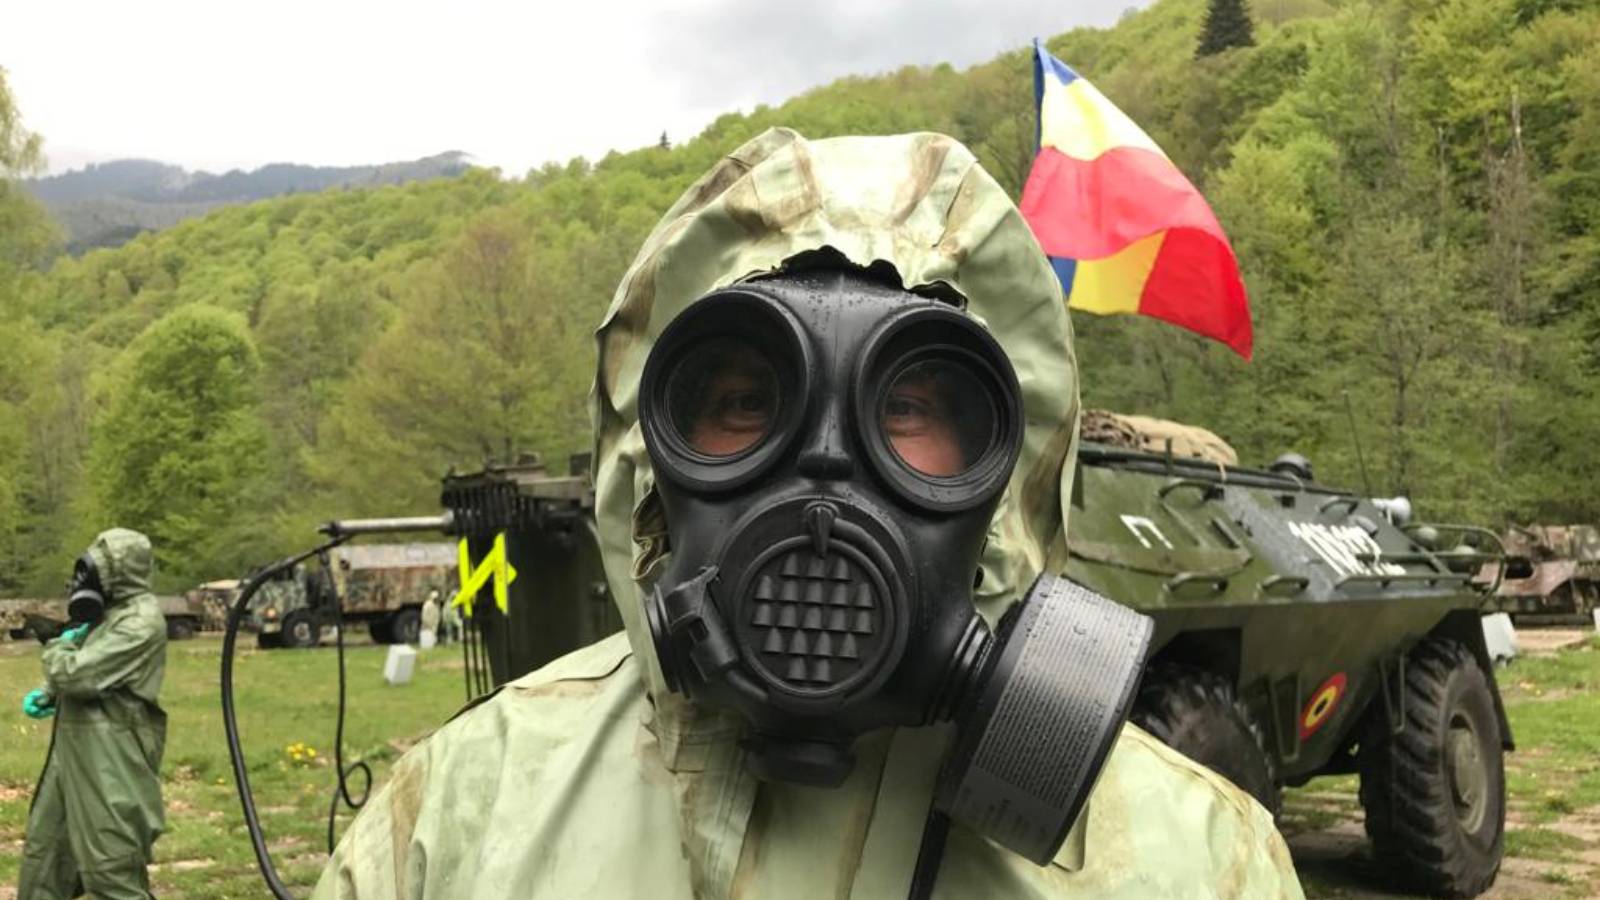 Cooperazione militare internazionale del campo di difesa CBRN dell'esercito rumeno